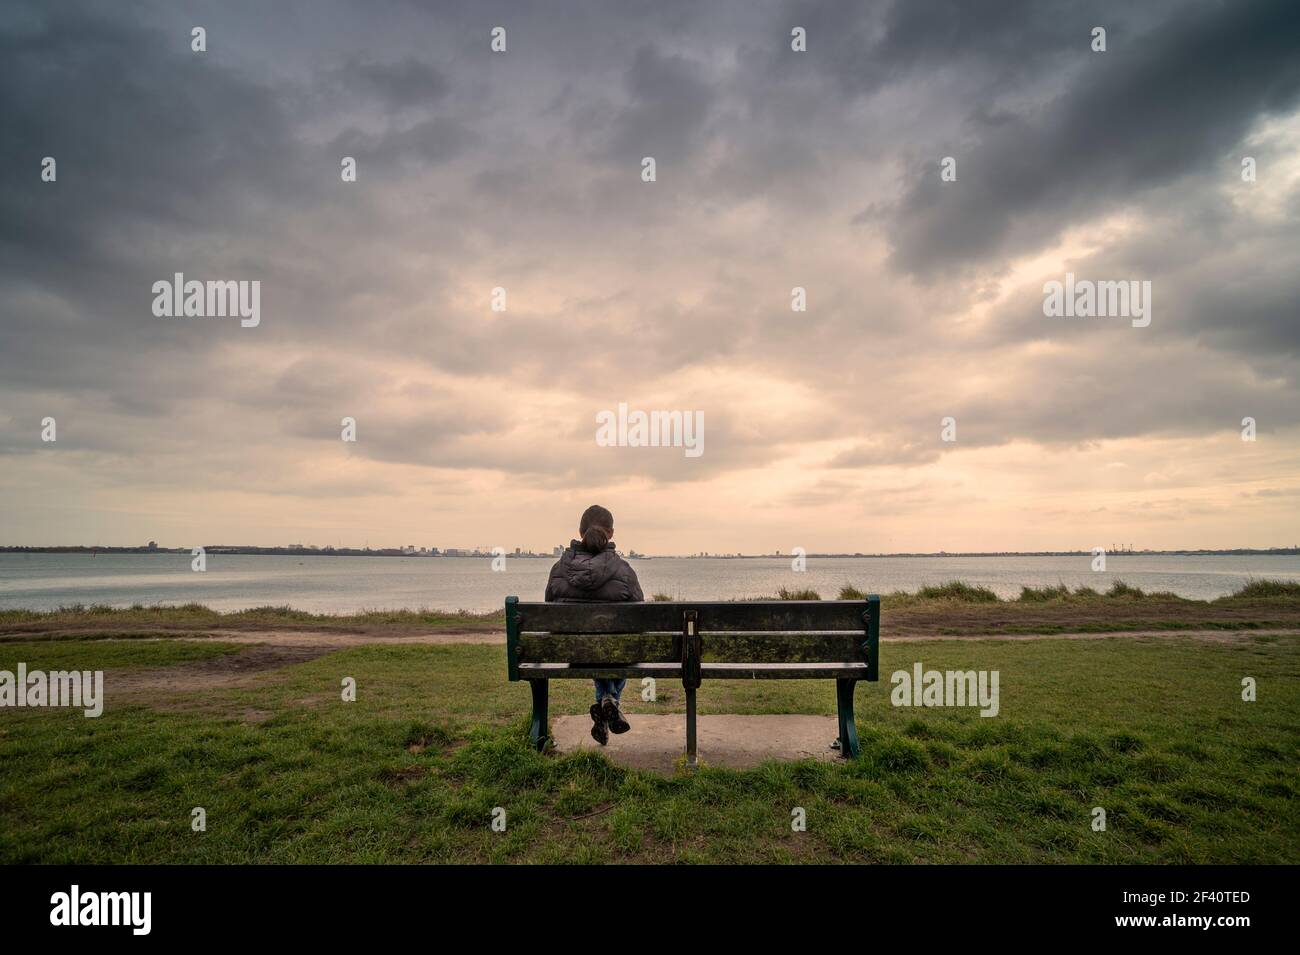 Vue arrière d'une femme assise sur un banc, vue sur la mer, ciel de moody. Banque D'Images